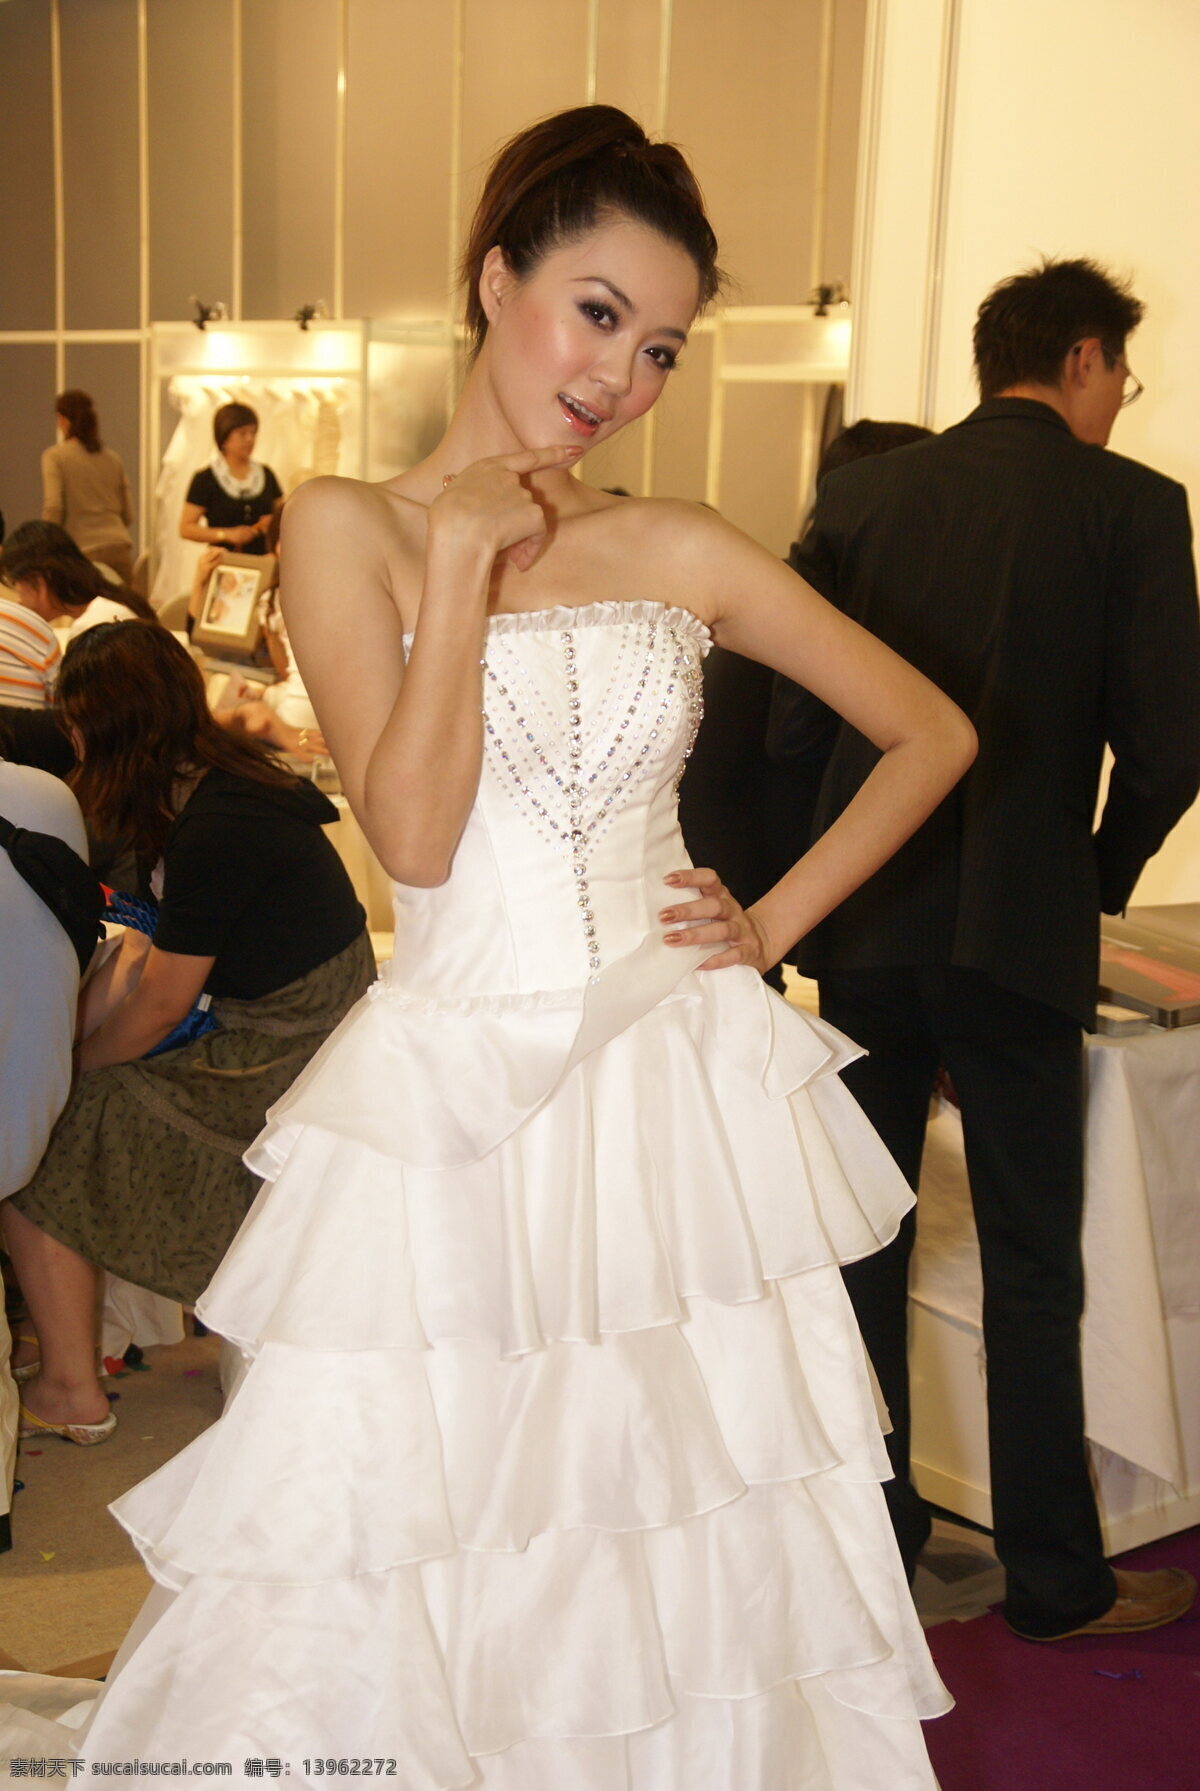 白色 天使 时装模特 清纯 性感 迷人 白色婚纱 后台 化装 高清晰 人物图库 职业人物 摄影图库